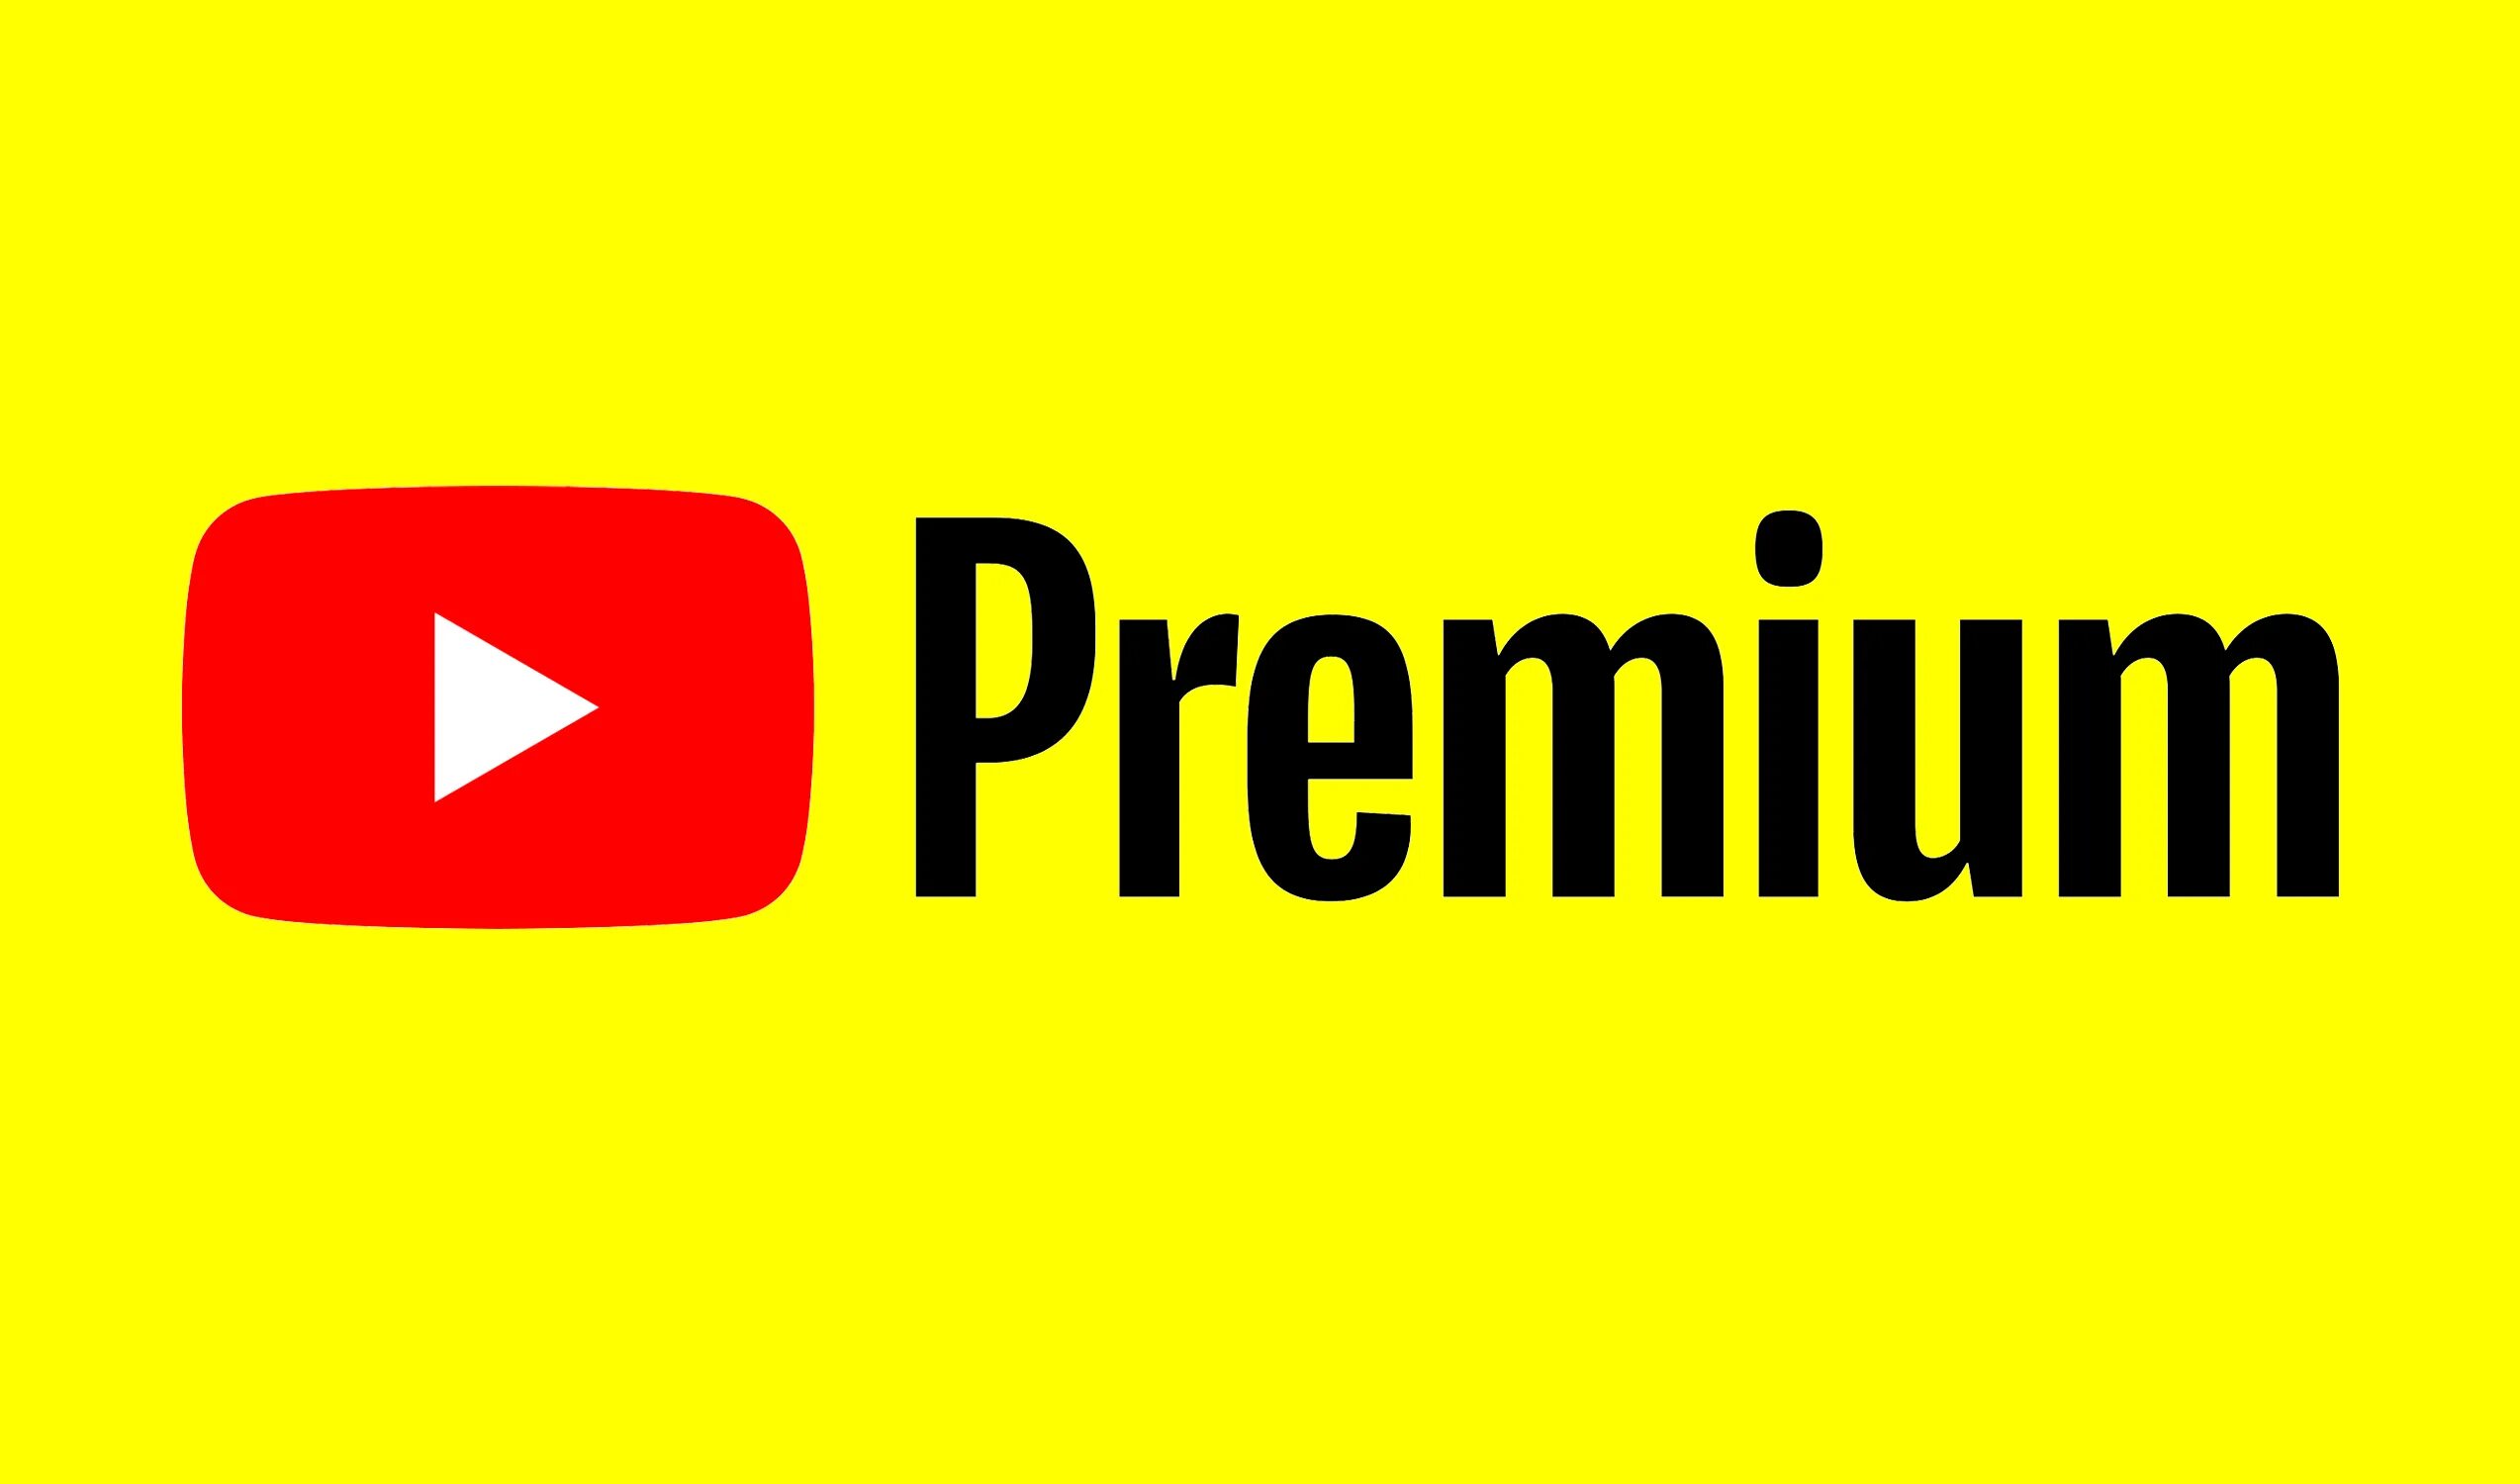 Ютуб мьюзик премиум цена. Youtube Premium. Ютуб премиум. Логотип ютуб. Ютуб премиум логотип.